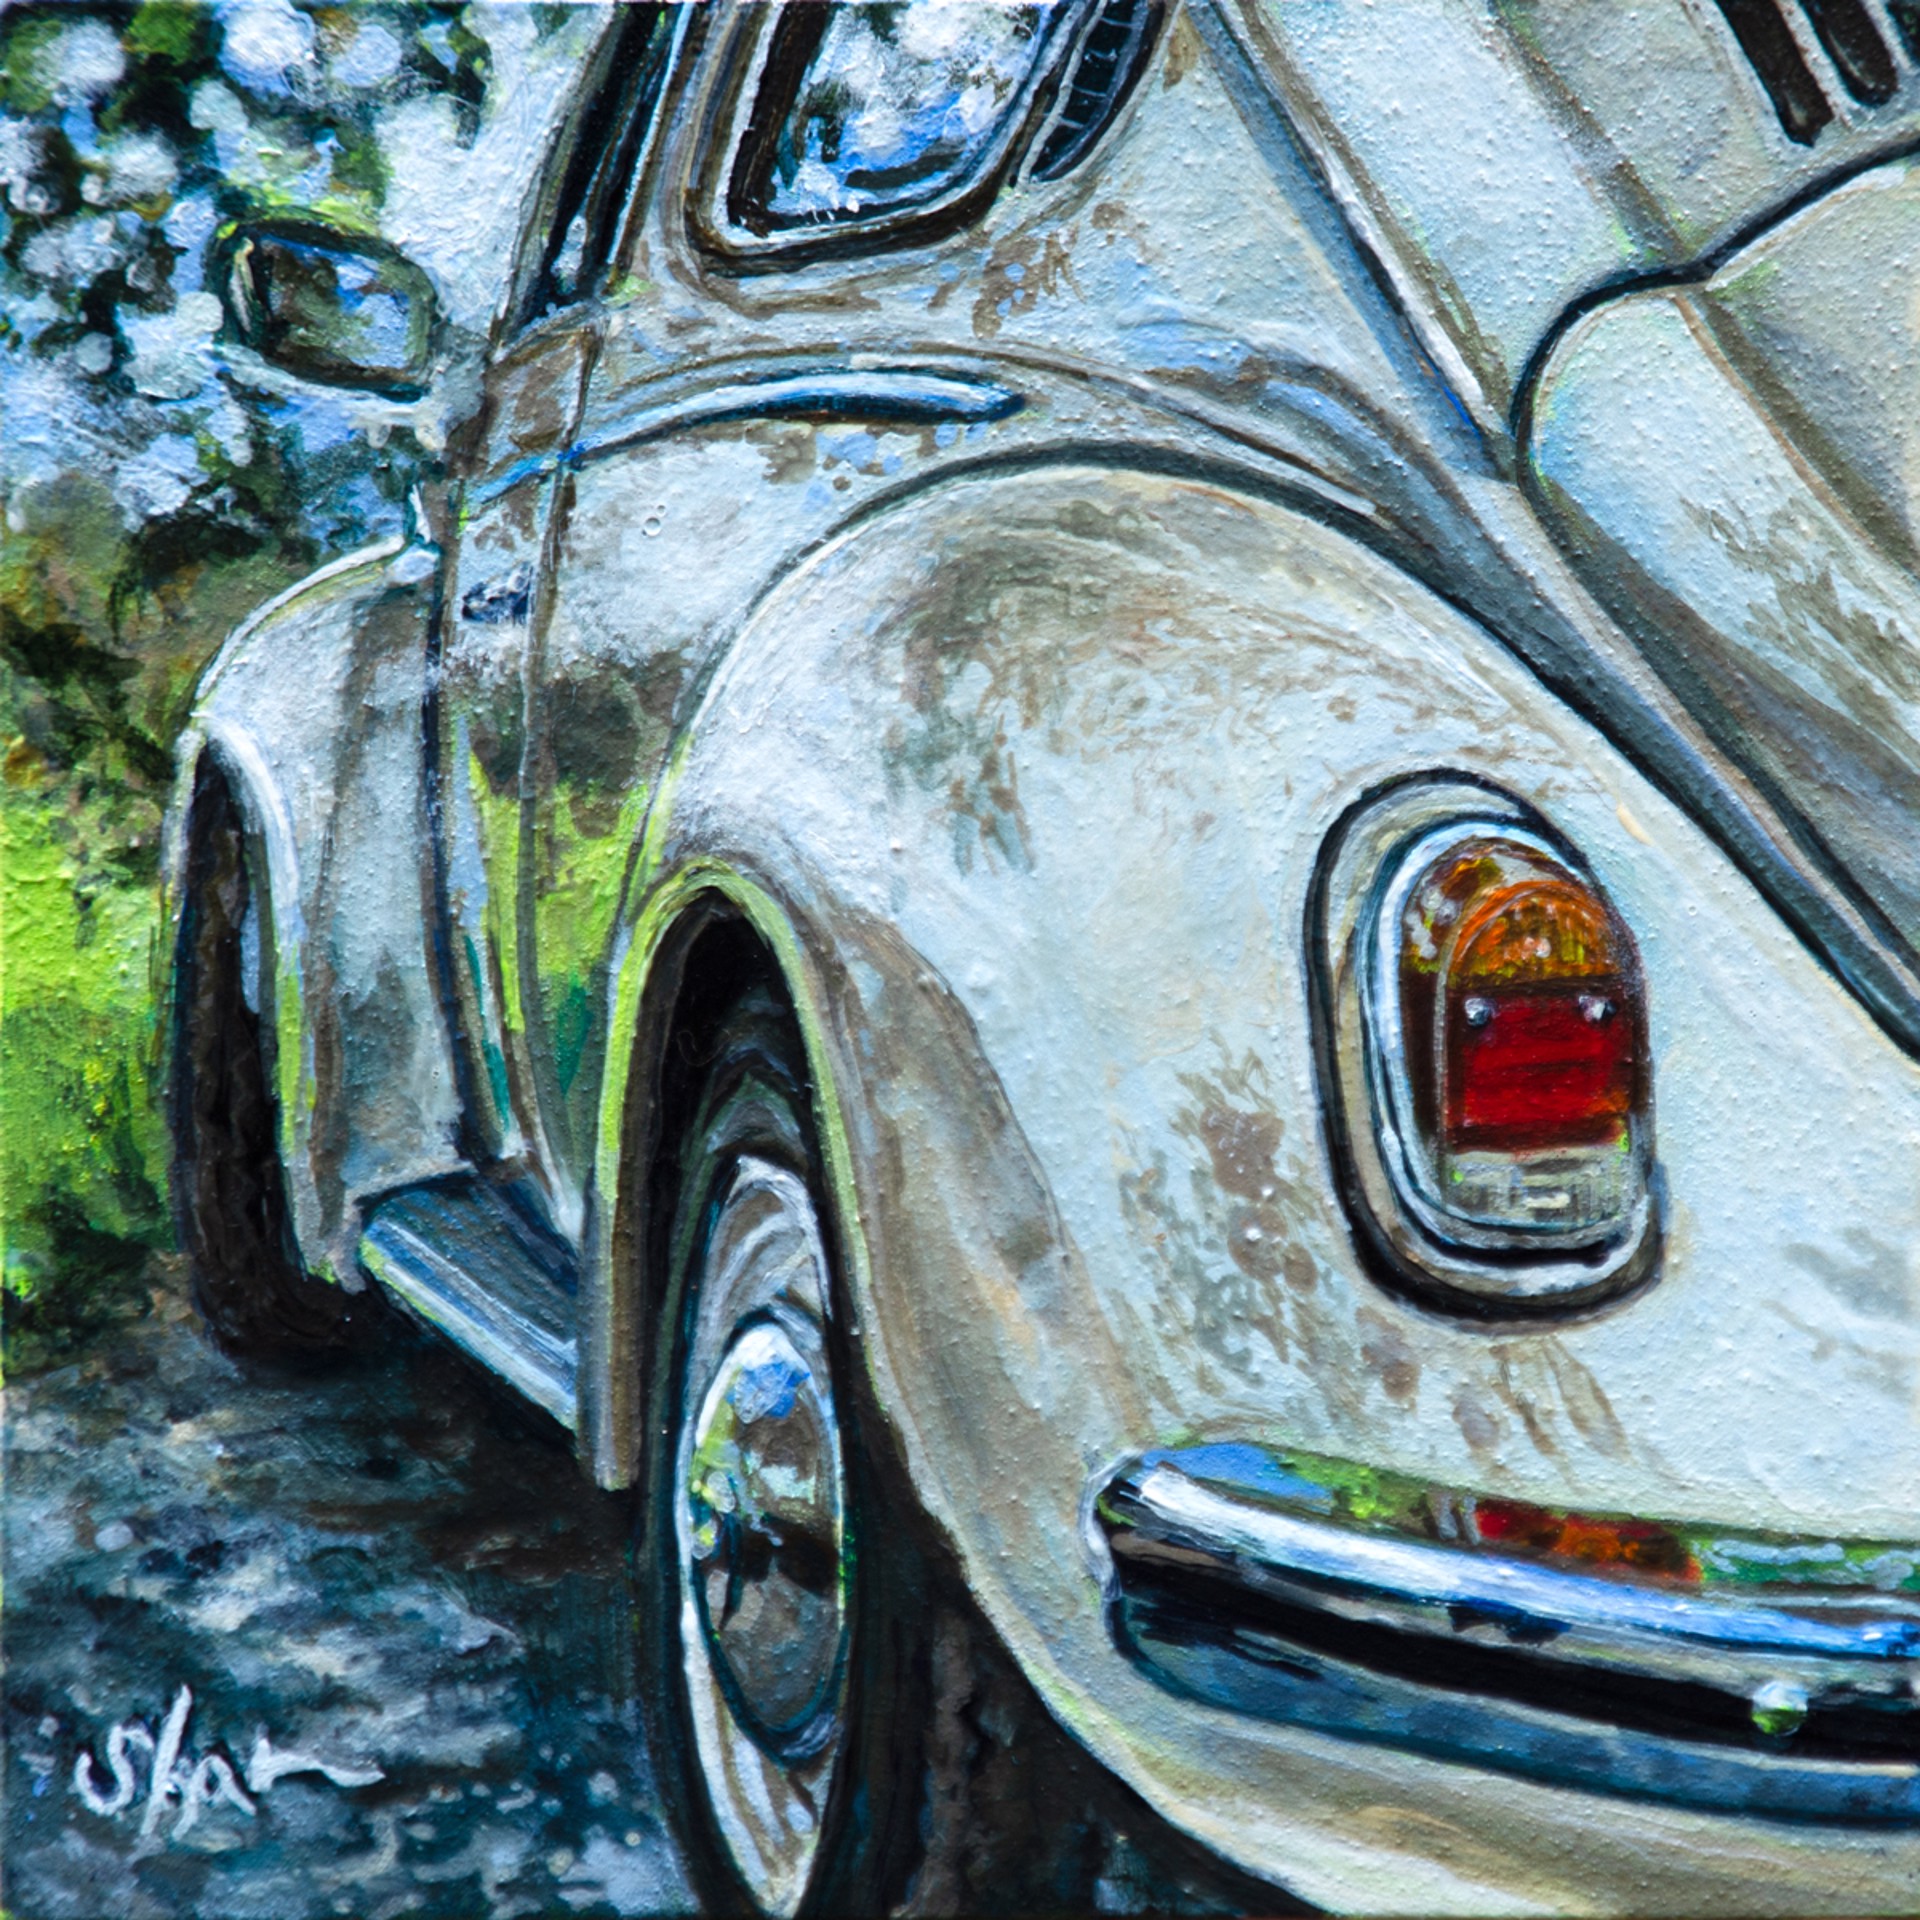 Just Chillin’ - Volkswagen Beetle by Shan Fannin